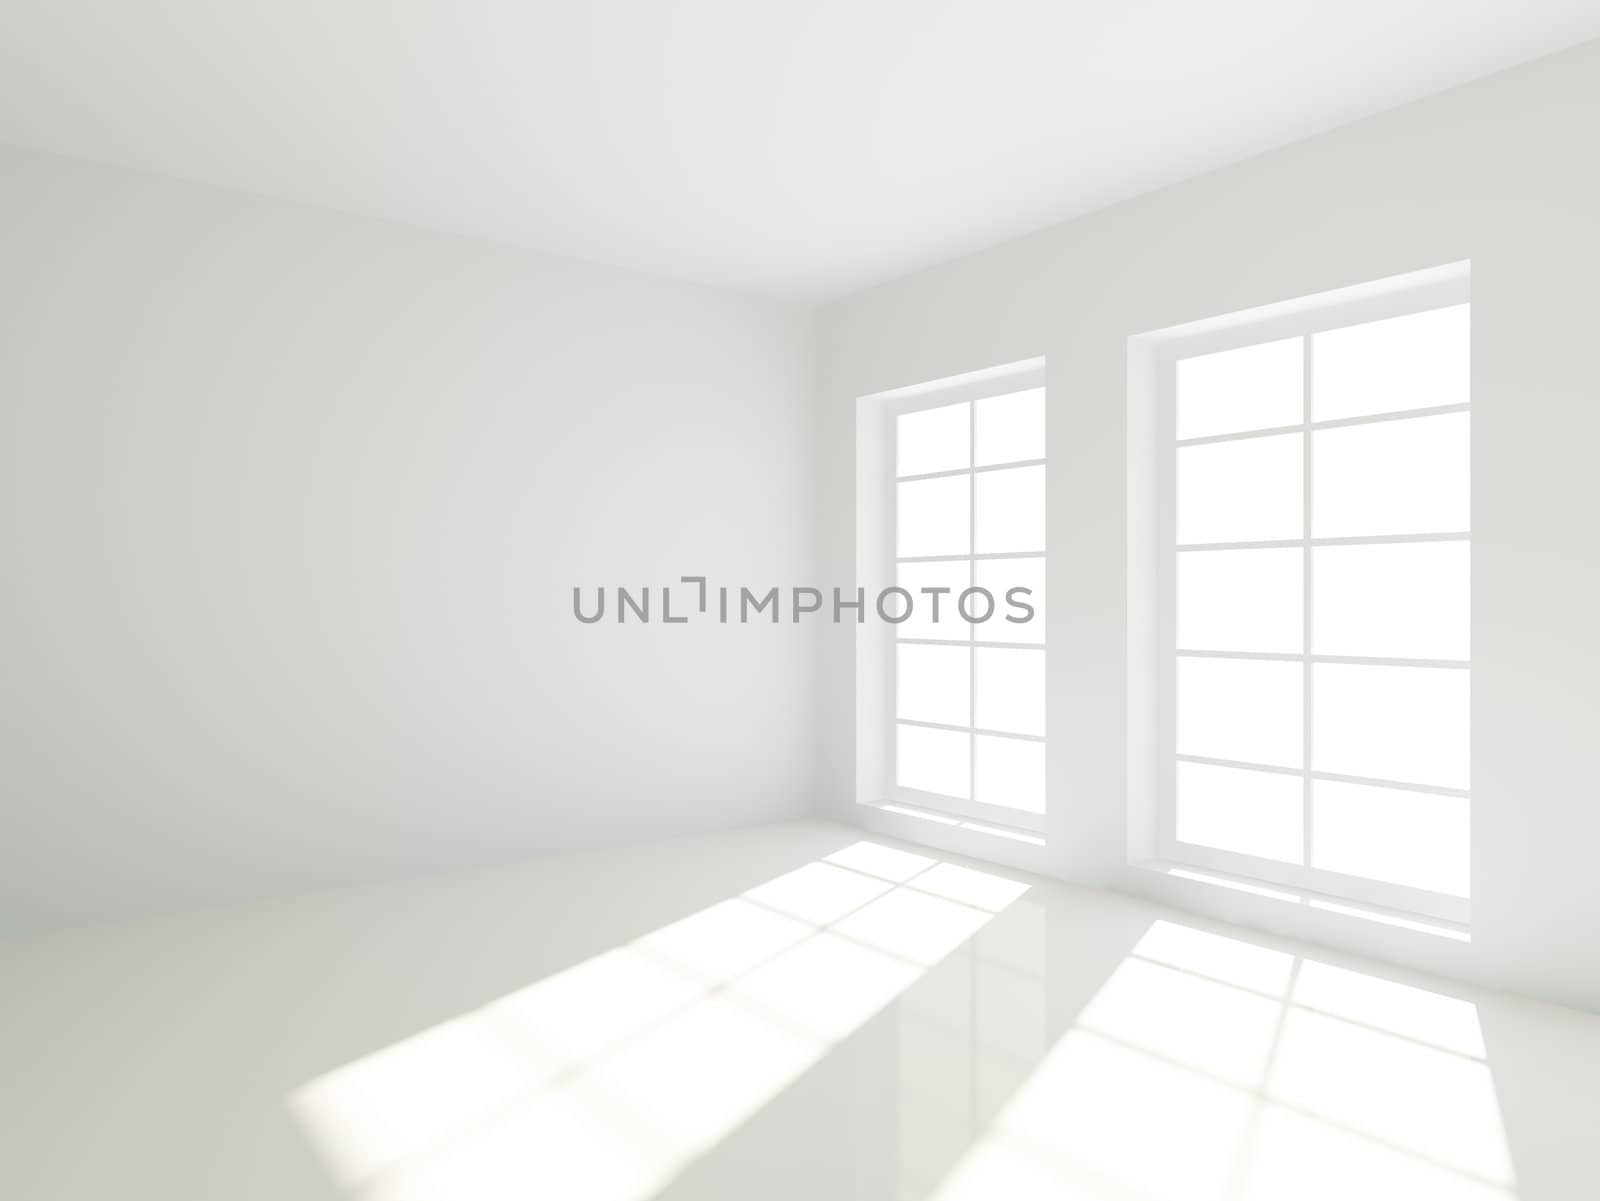 Empty Room by maxkrasnov